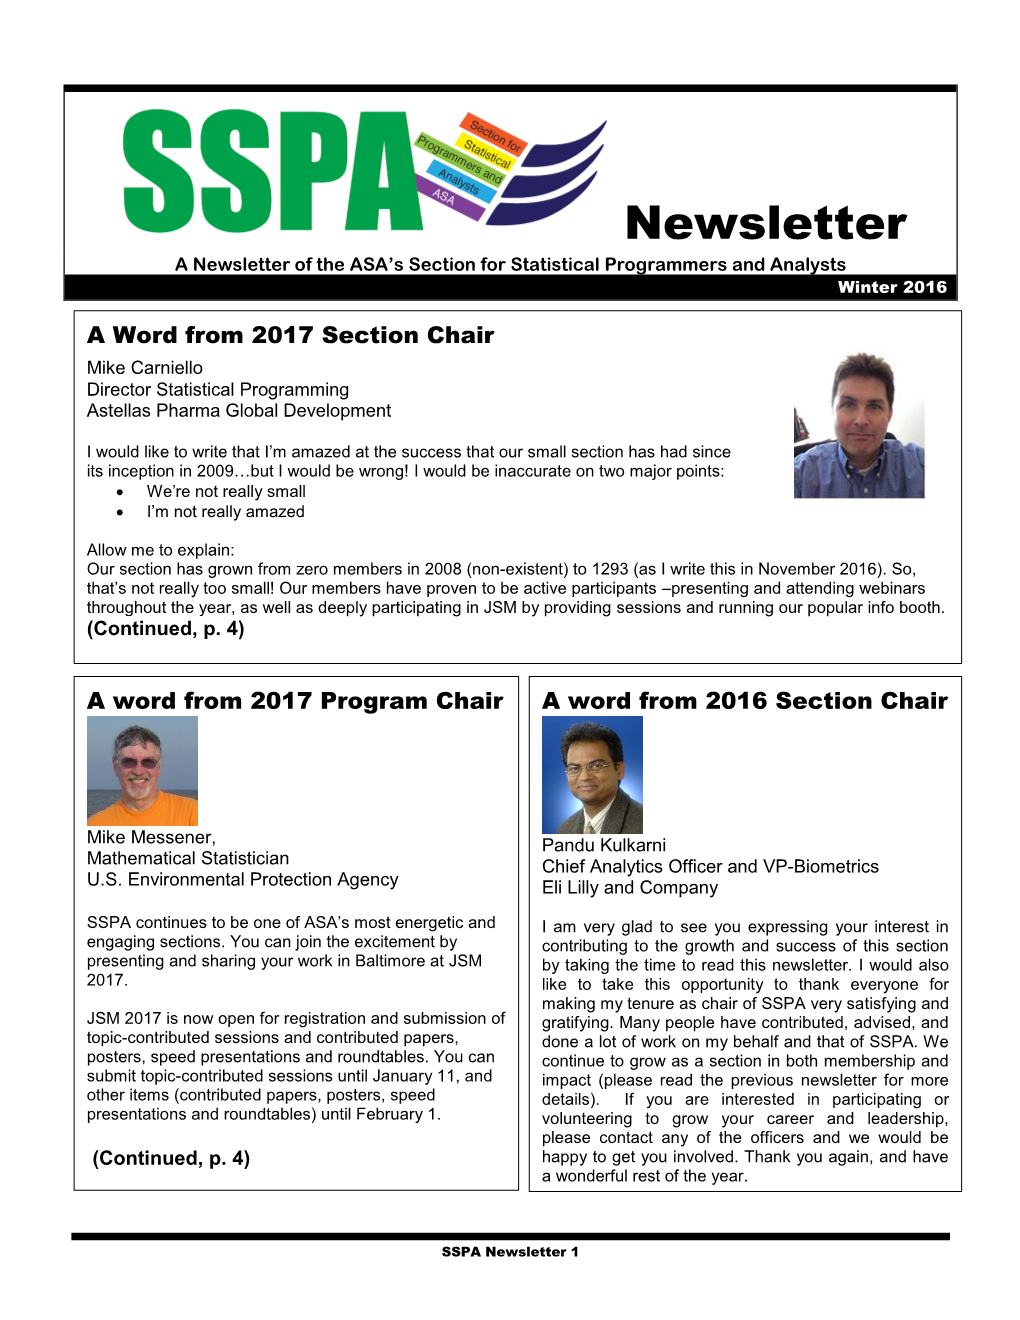 SSPA Newsletter 1